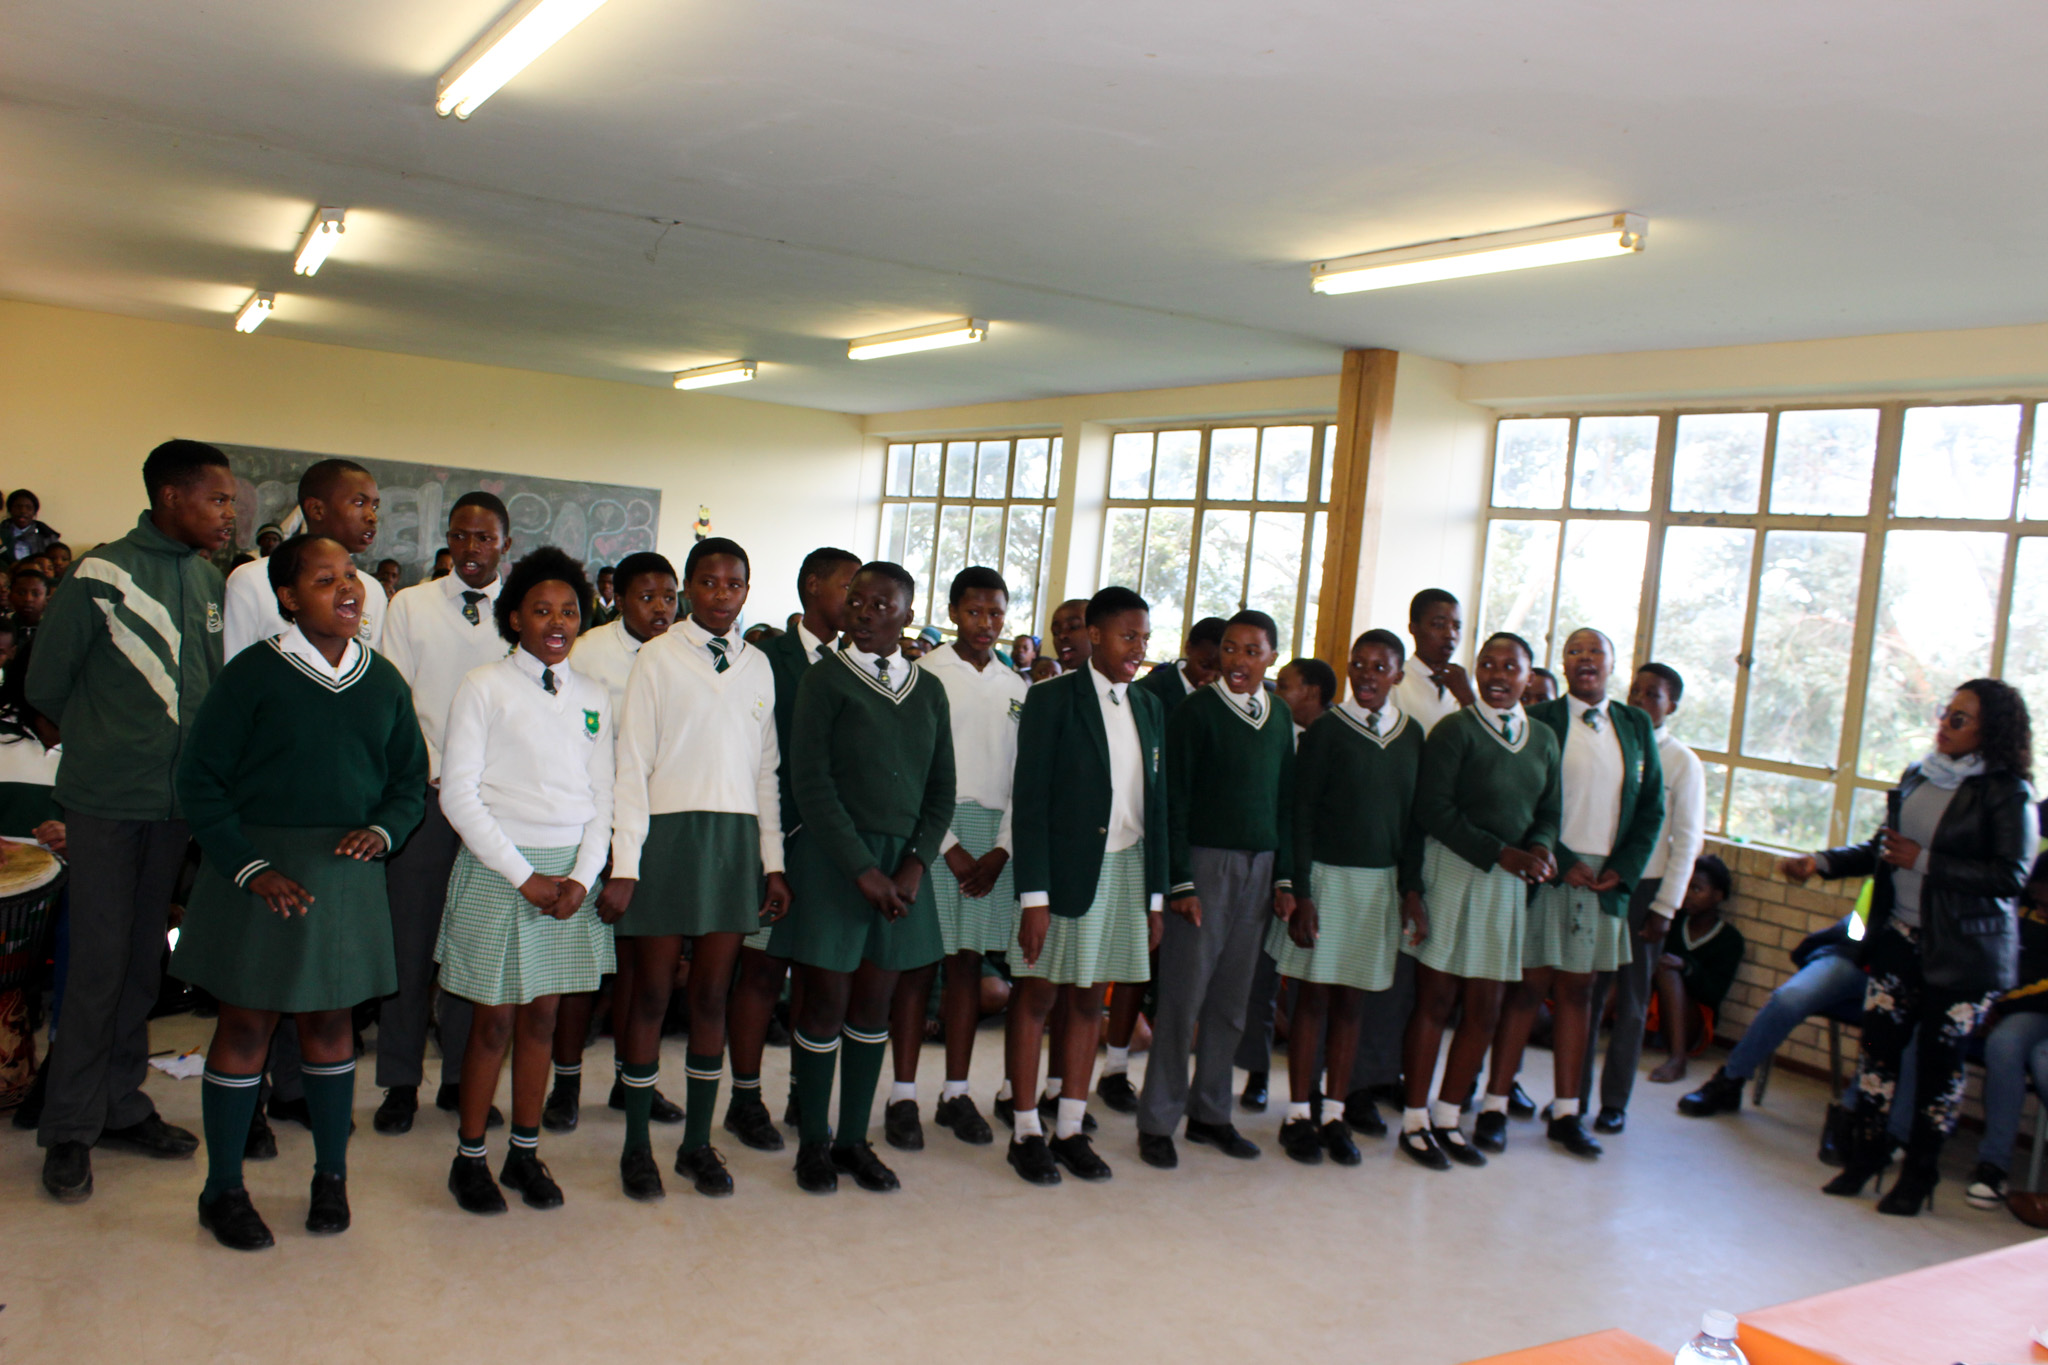 Fikizolo Primary School choir preforming.